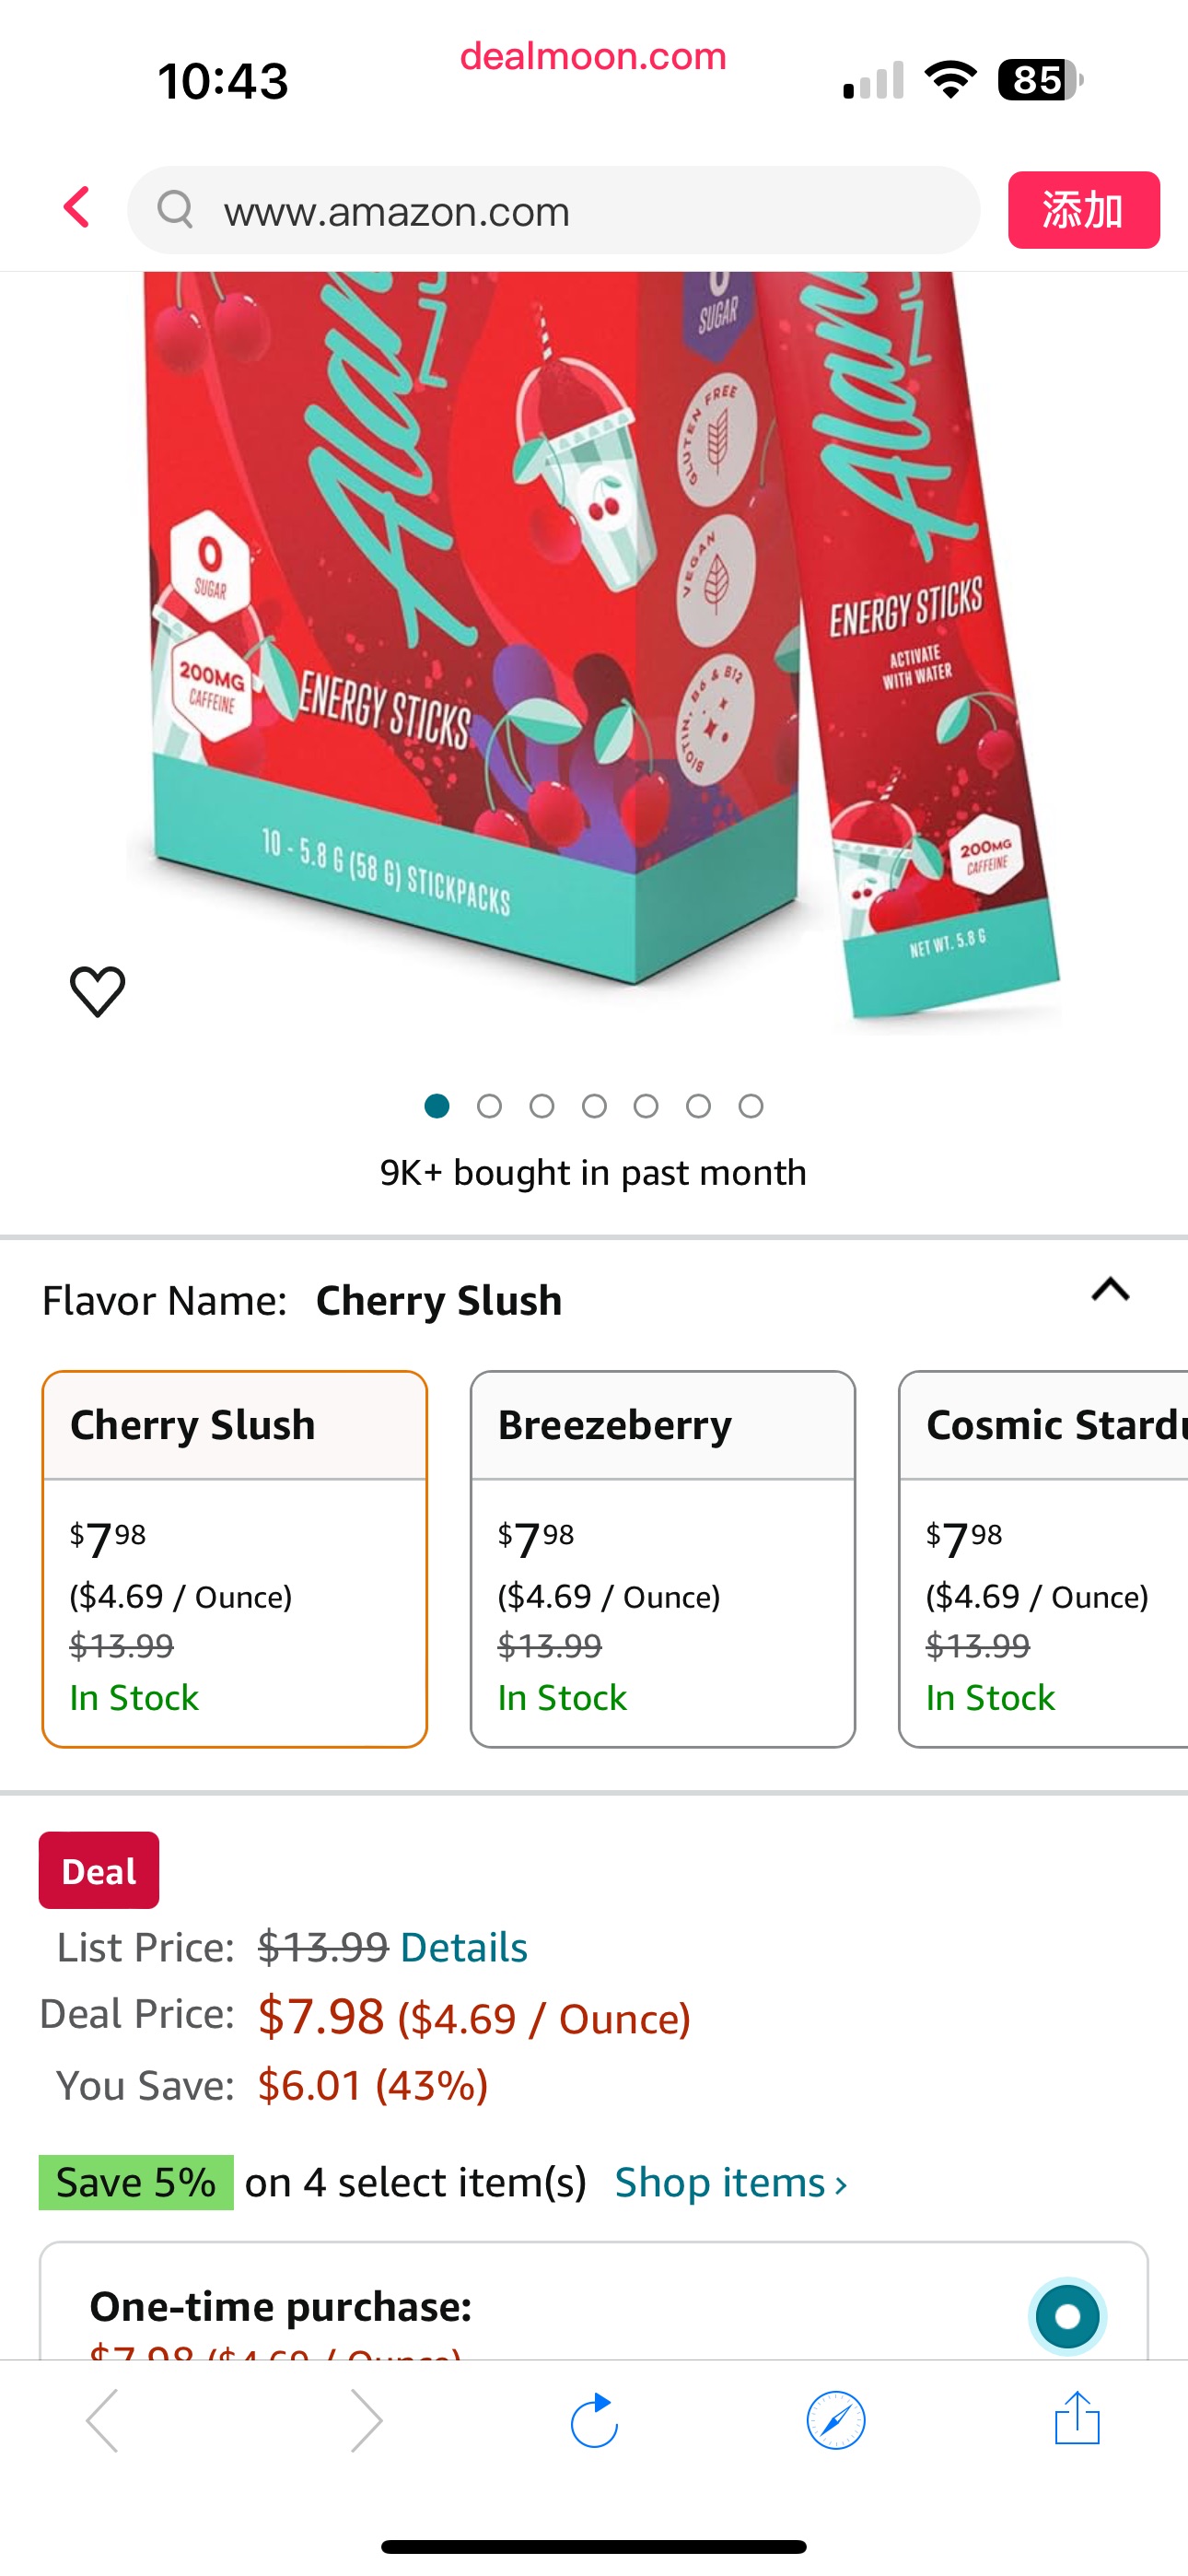 Amazon.com: Alani Nu Cherry Slush 能量棒|能量饮料粉|200毫克咖啡因|锻炼前性能与抗氧化剂|在去饮料混合|生物素，B维生素|零糖|5卡路里| 10包